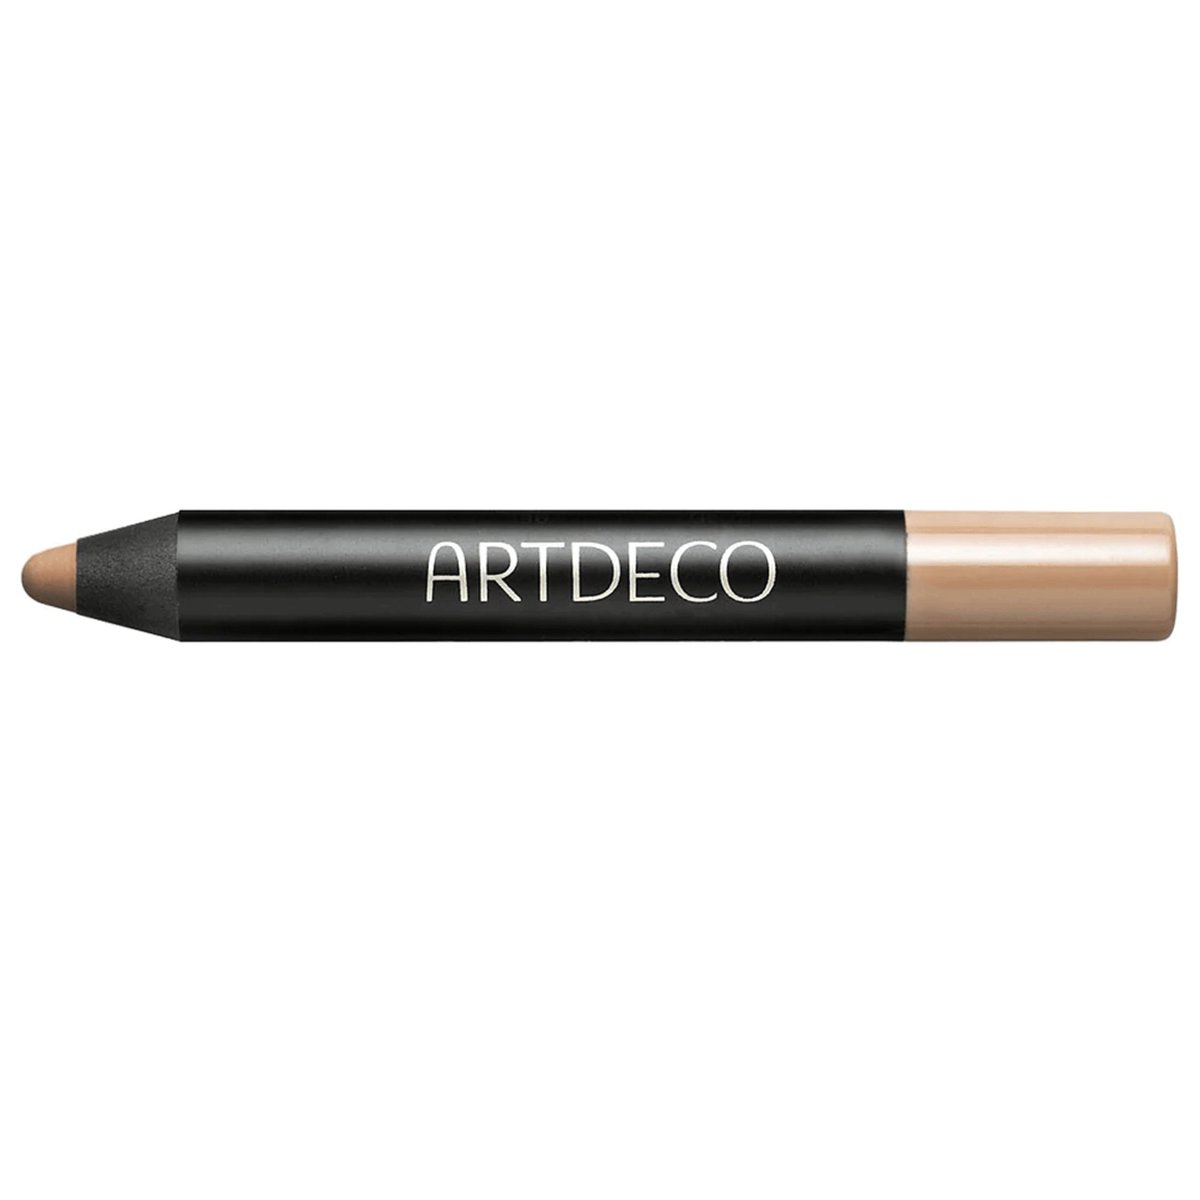 Artdeco - Camouflage Stick - 5 Sahara Rose - Artdeco